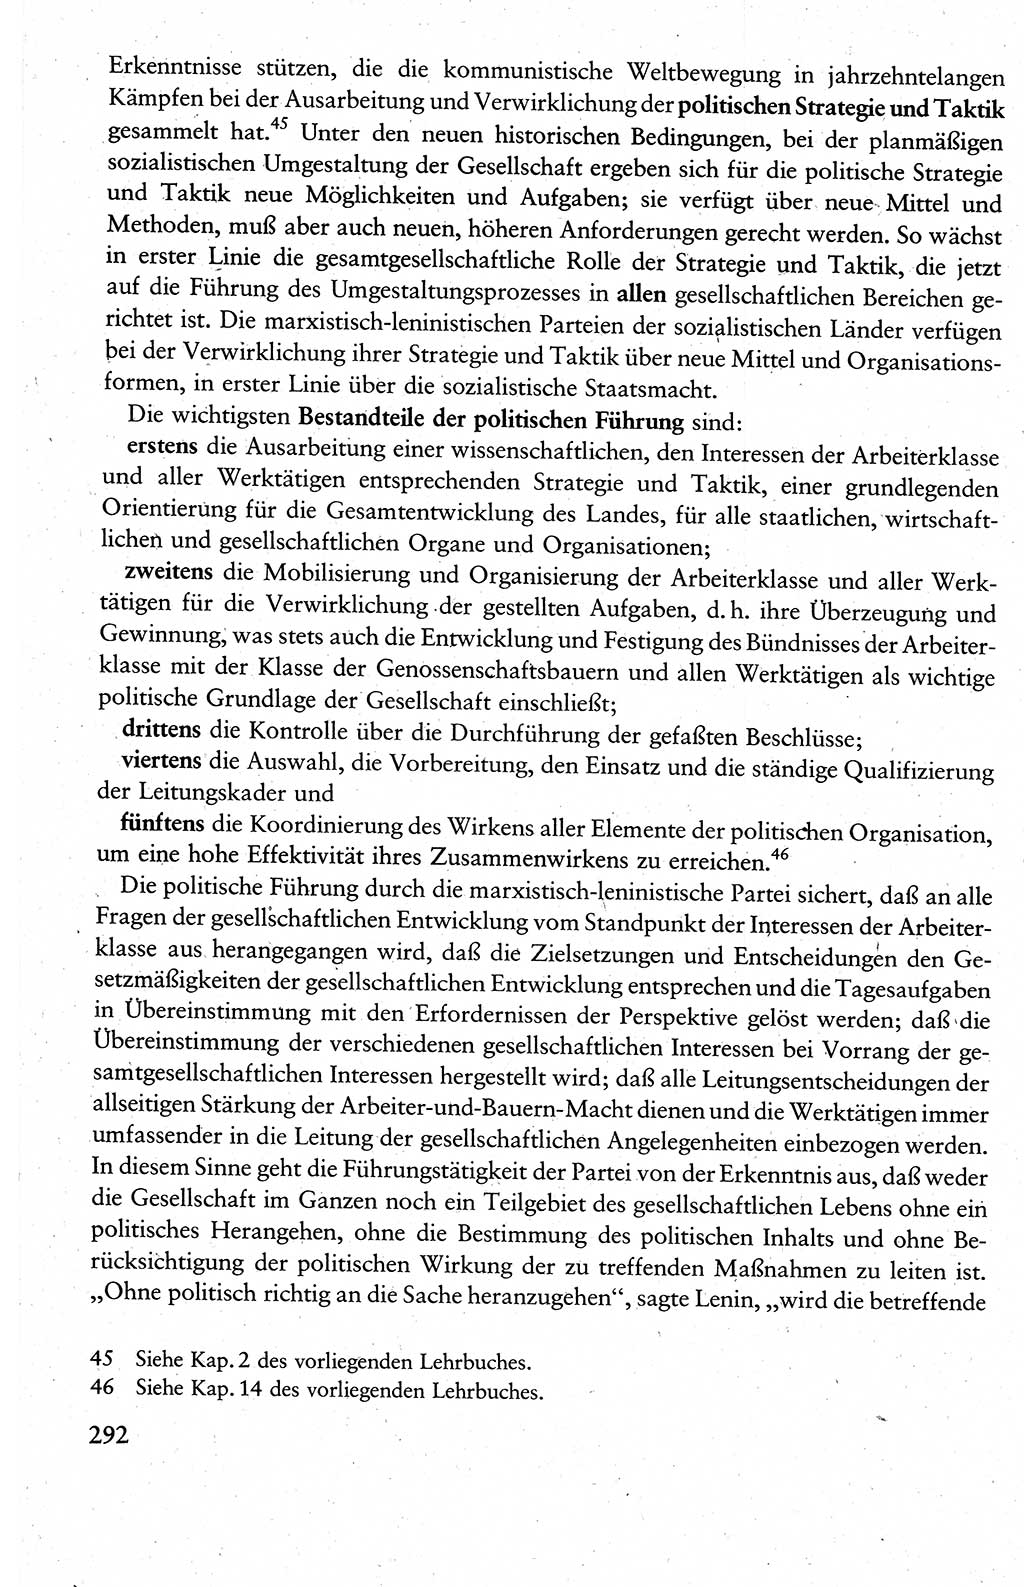 Wissenschaftlicher Kommunismus [Deutsche Demokratische Republik (DDR)], Lehrbuch für das marxistisch-leninistische Grundlagenstudium 1983, Seite 292 (Wiss. Komm. DDR Lb. 1983, S. 292)